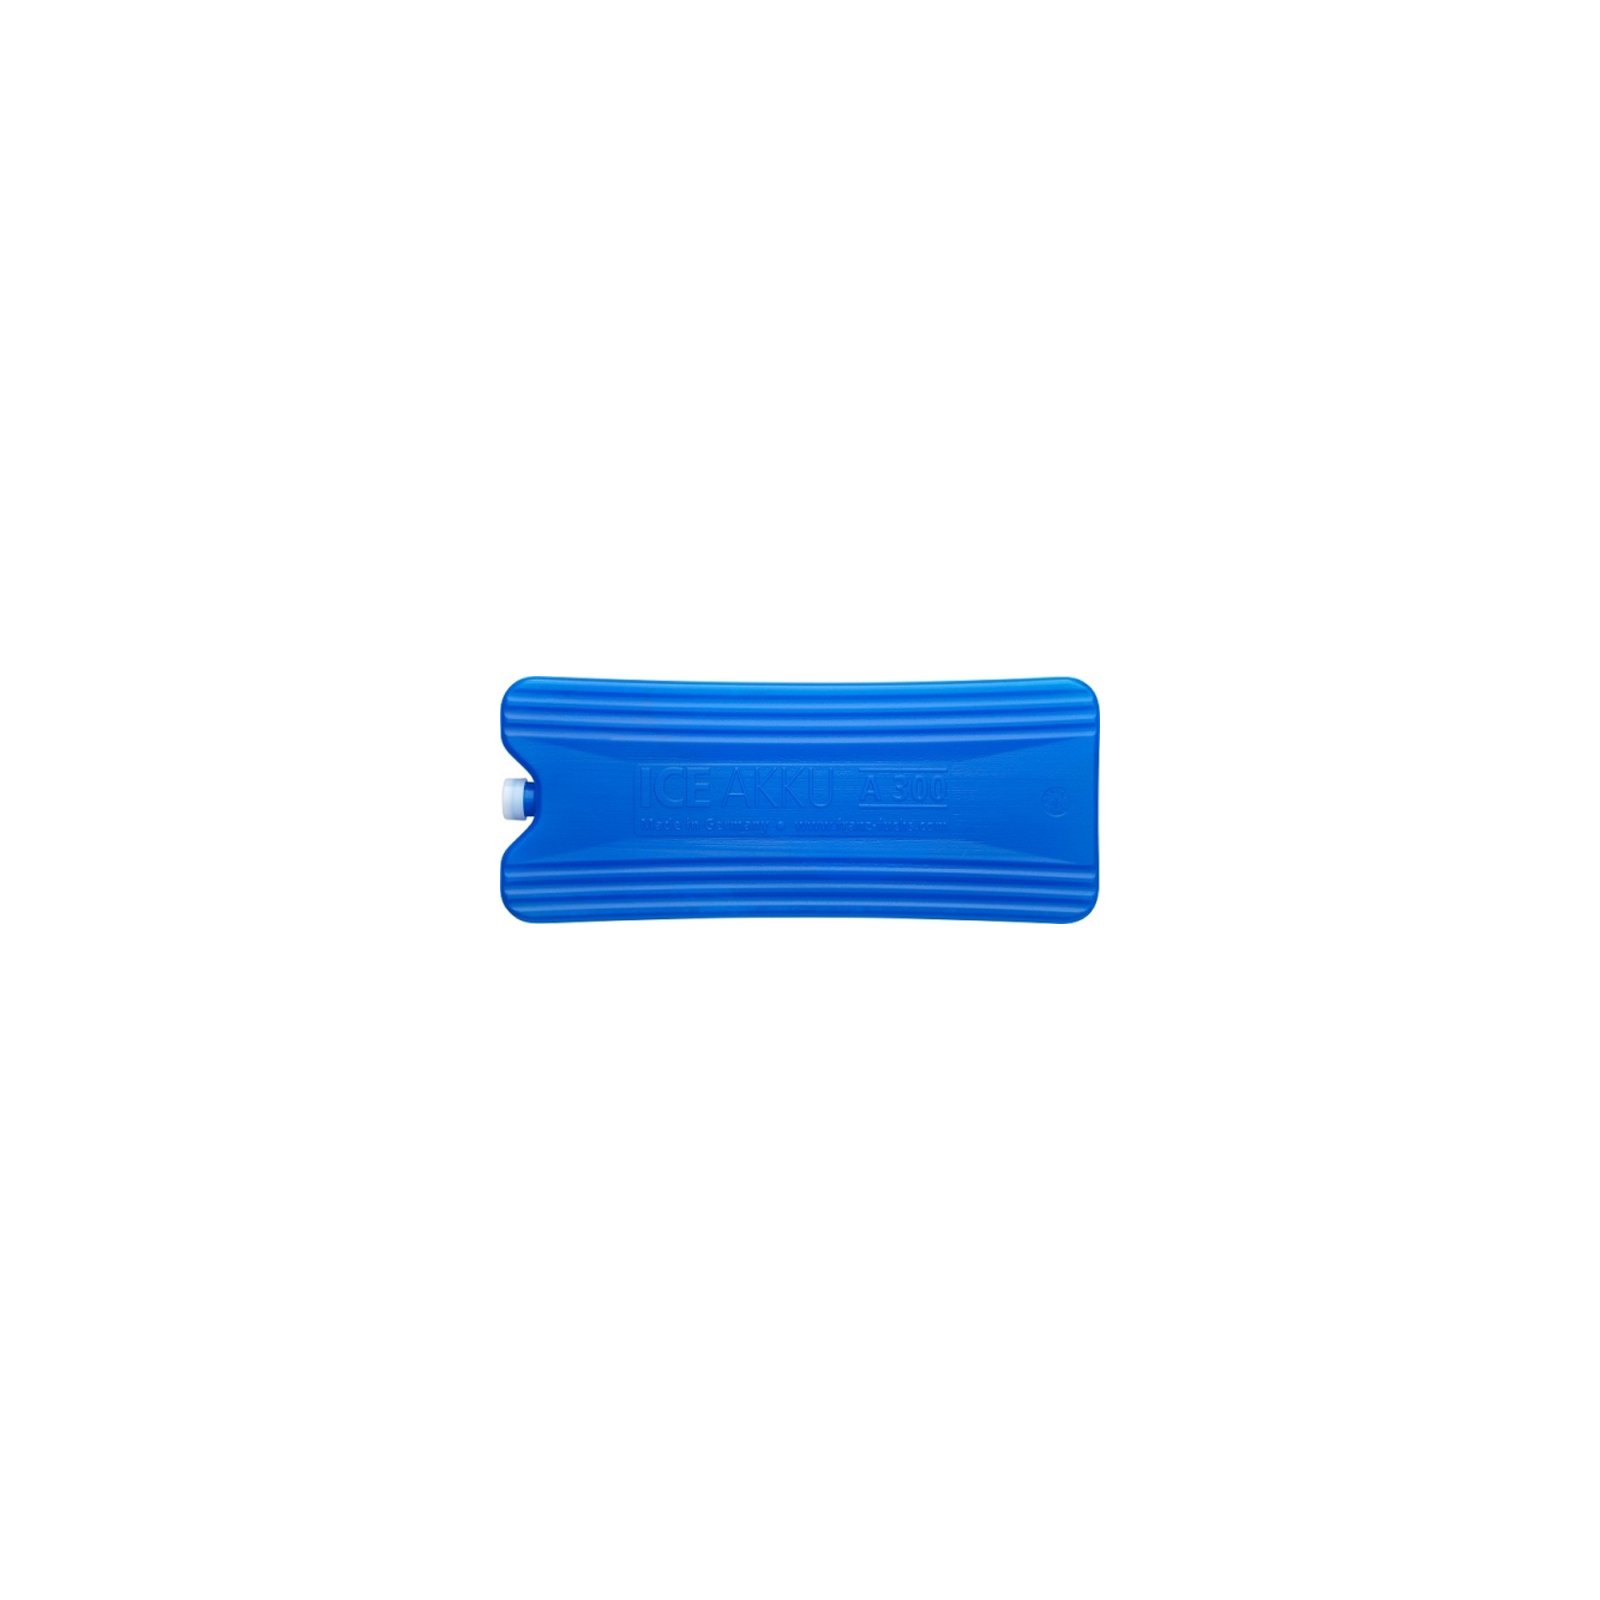 Акумулятор холоду Zorn IceAkku 1x300g blue (4251702500145) зображення 2